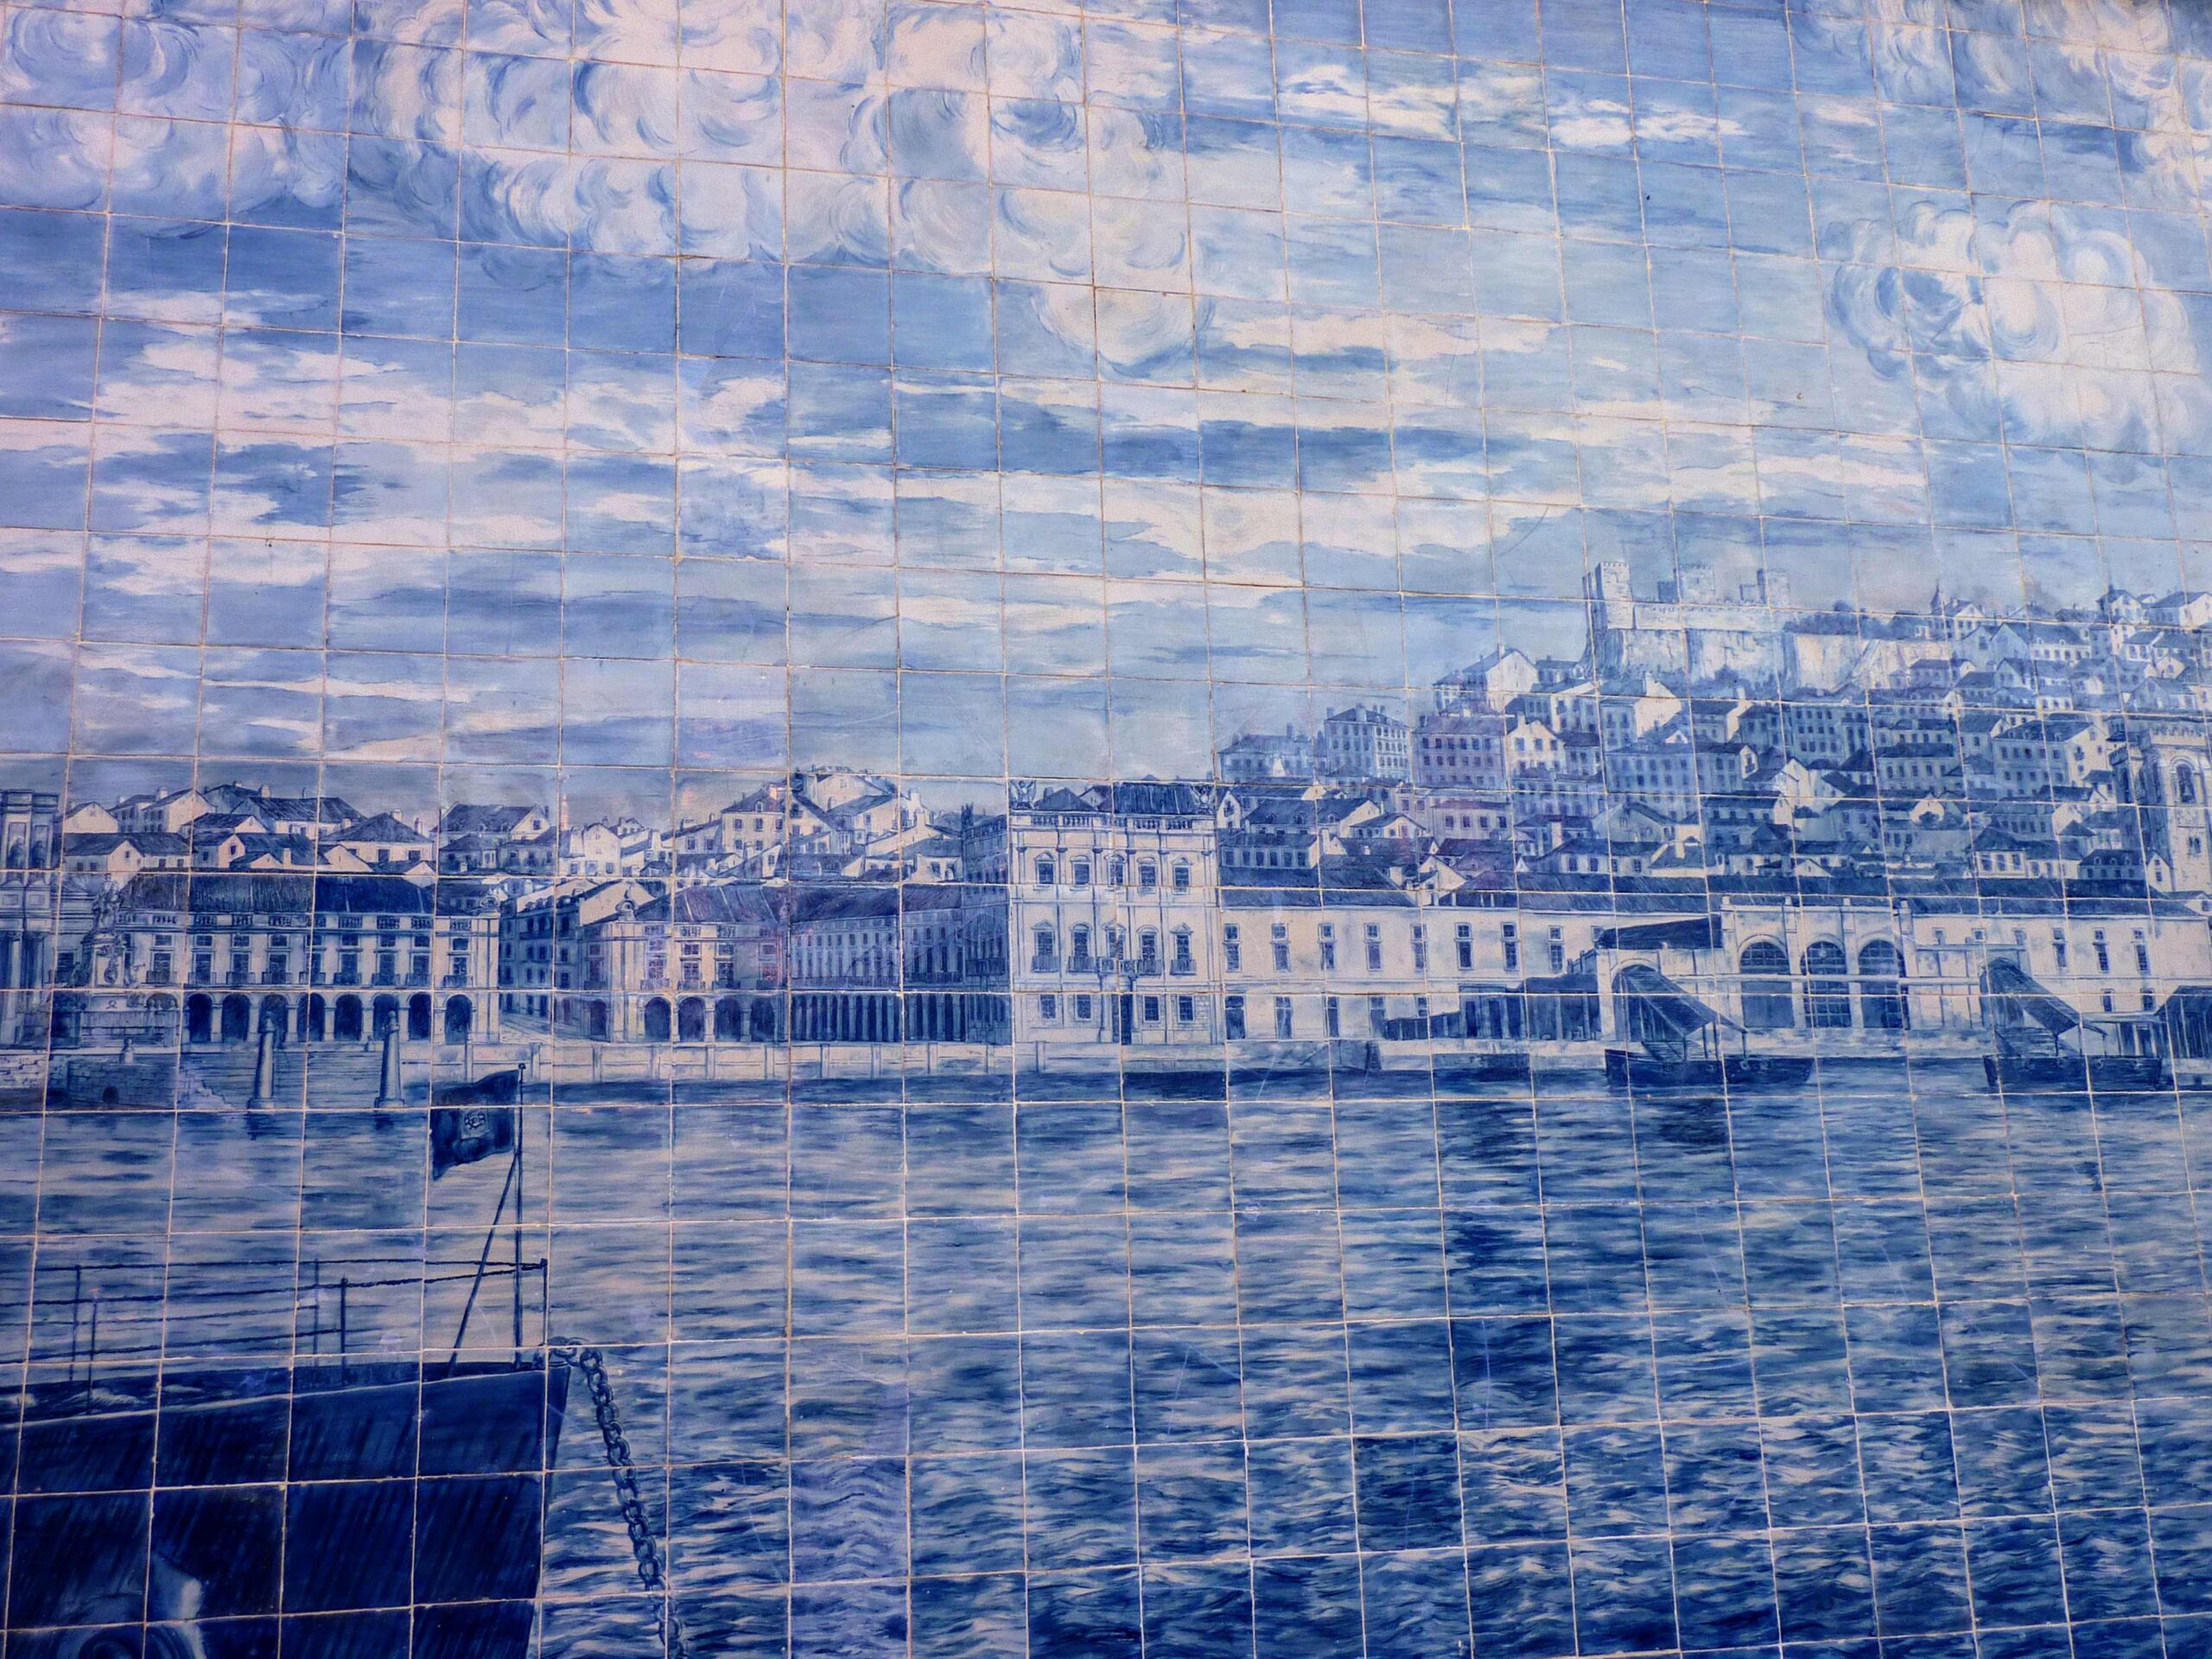 Lisboa. Azulejos